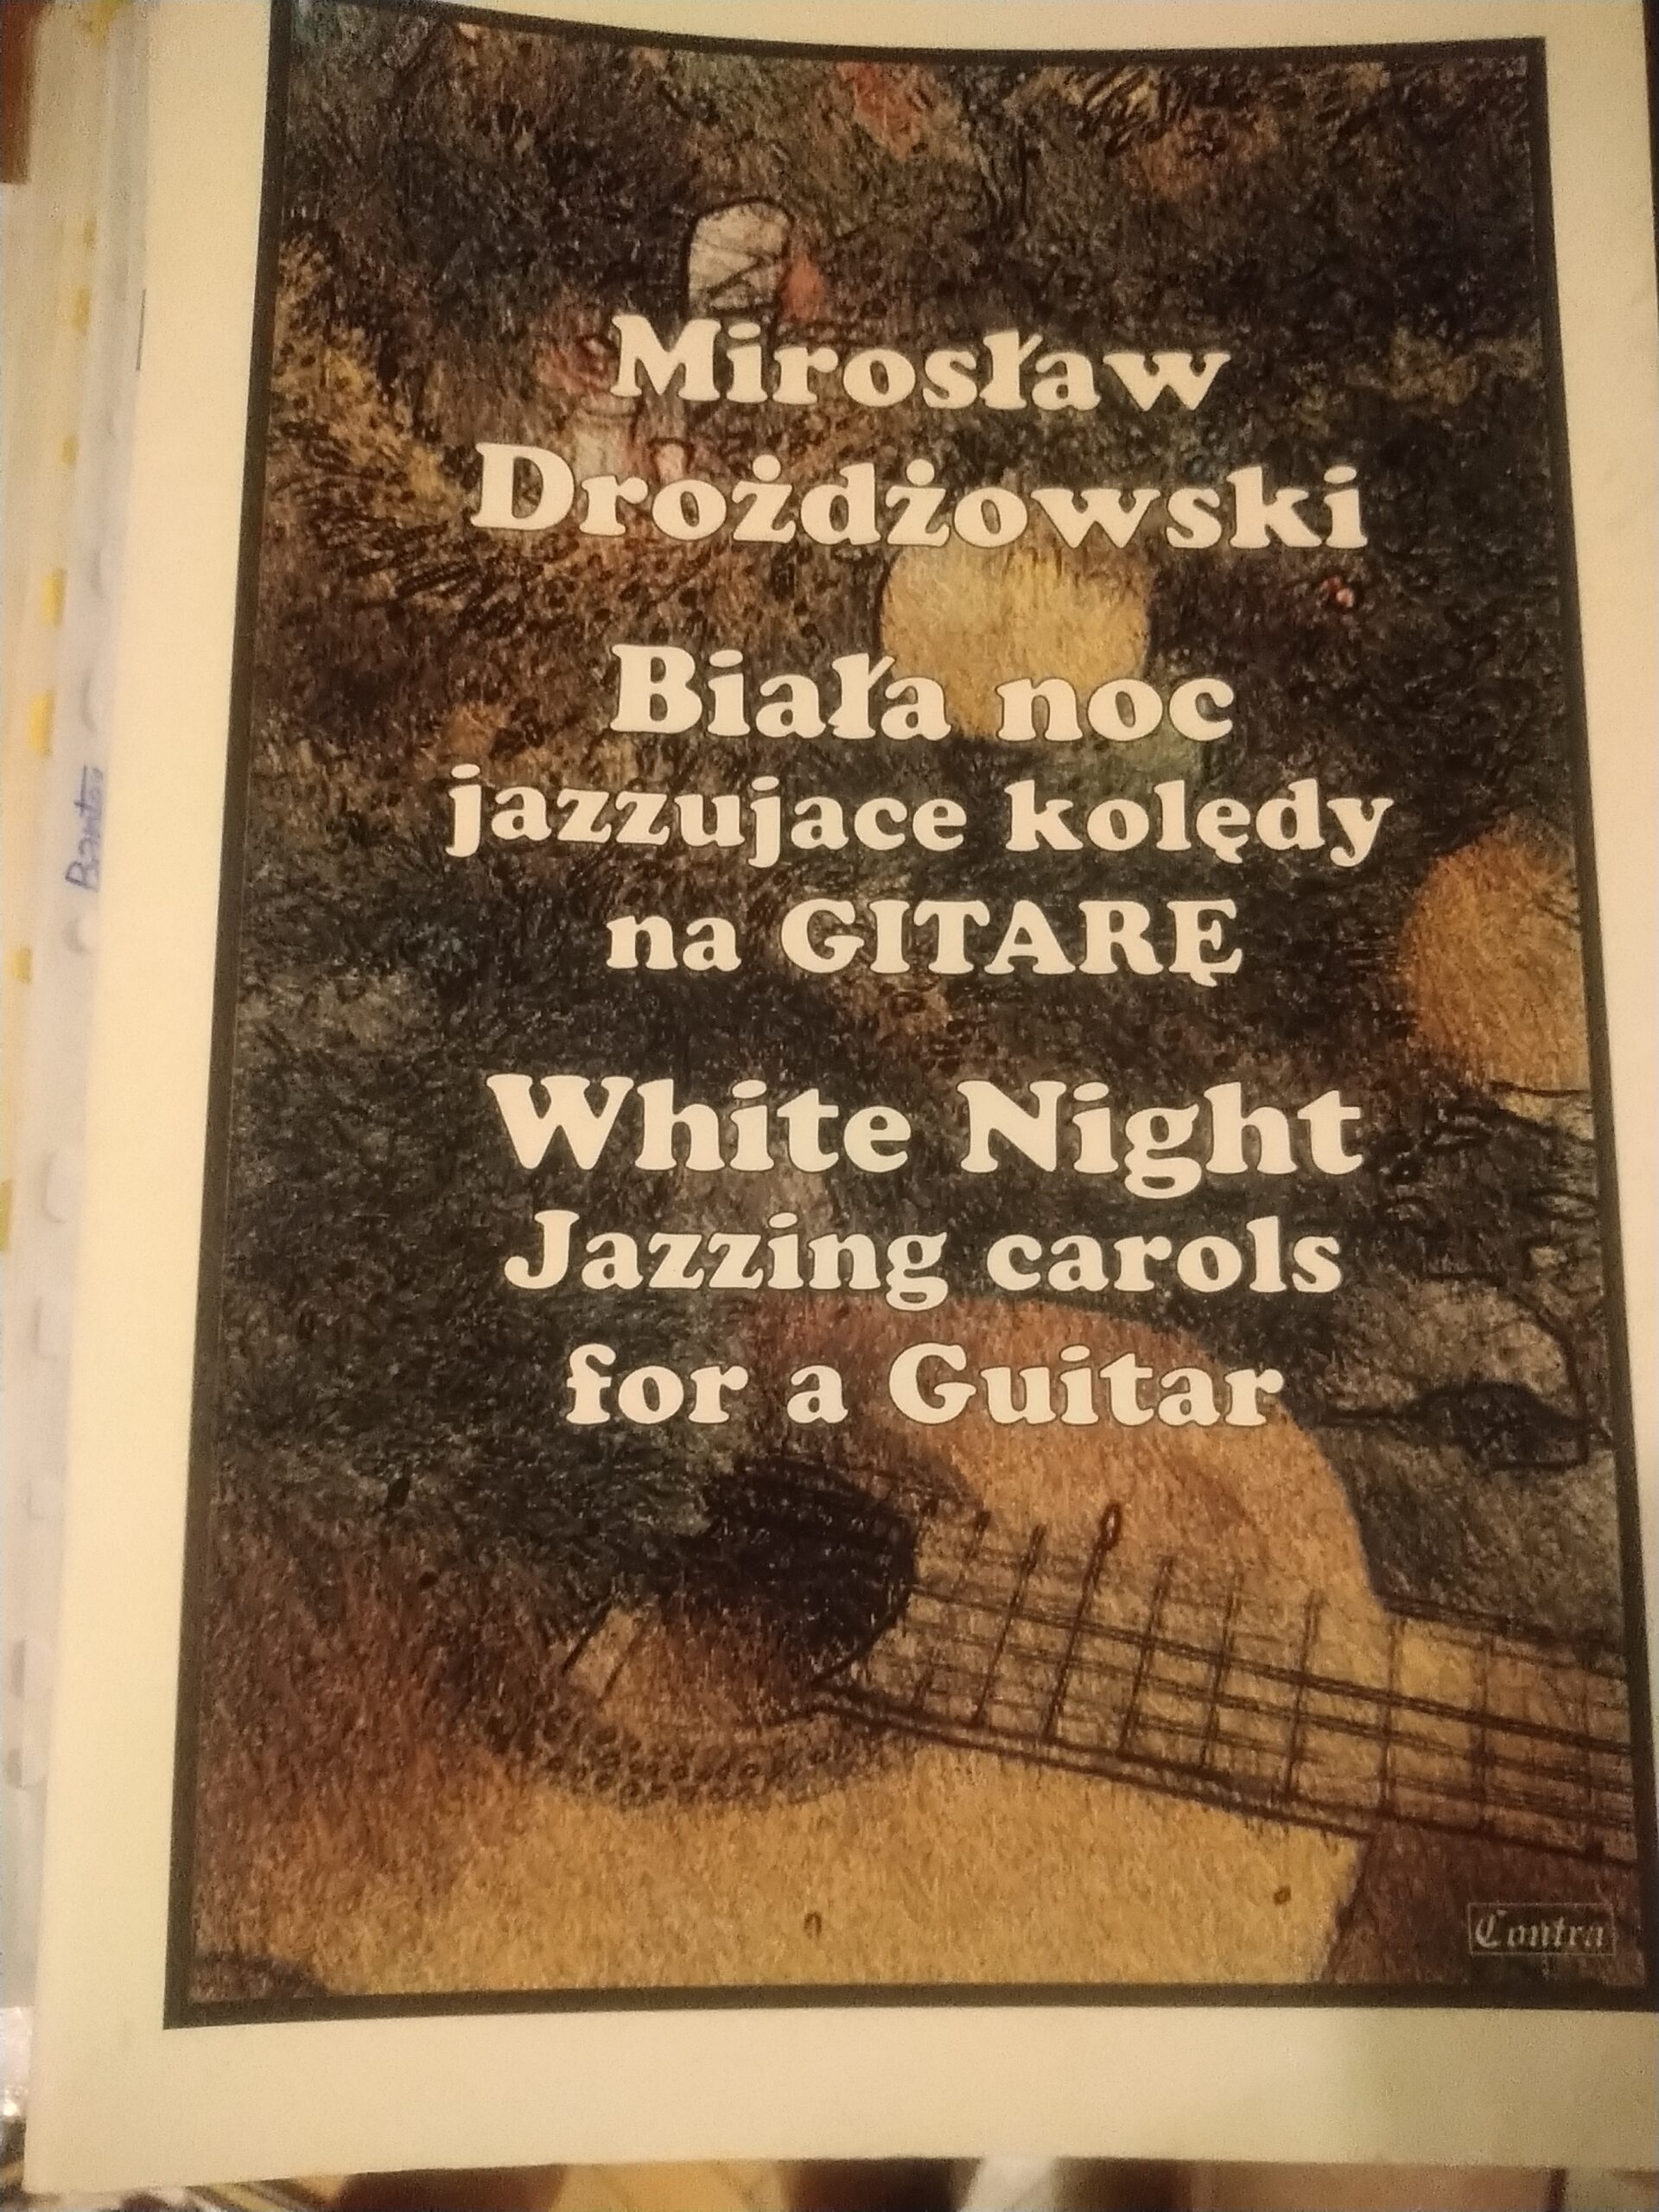 Mirosław Drożdżowski -Jazzujące kolędy na gitarę klasyczną